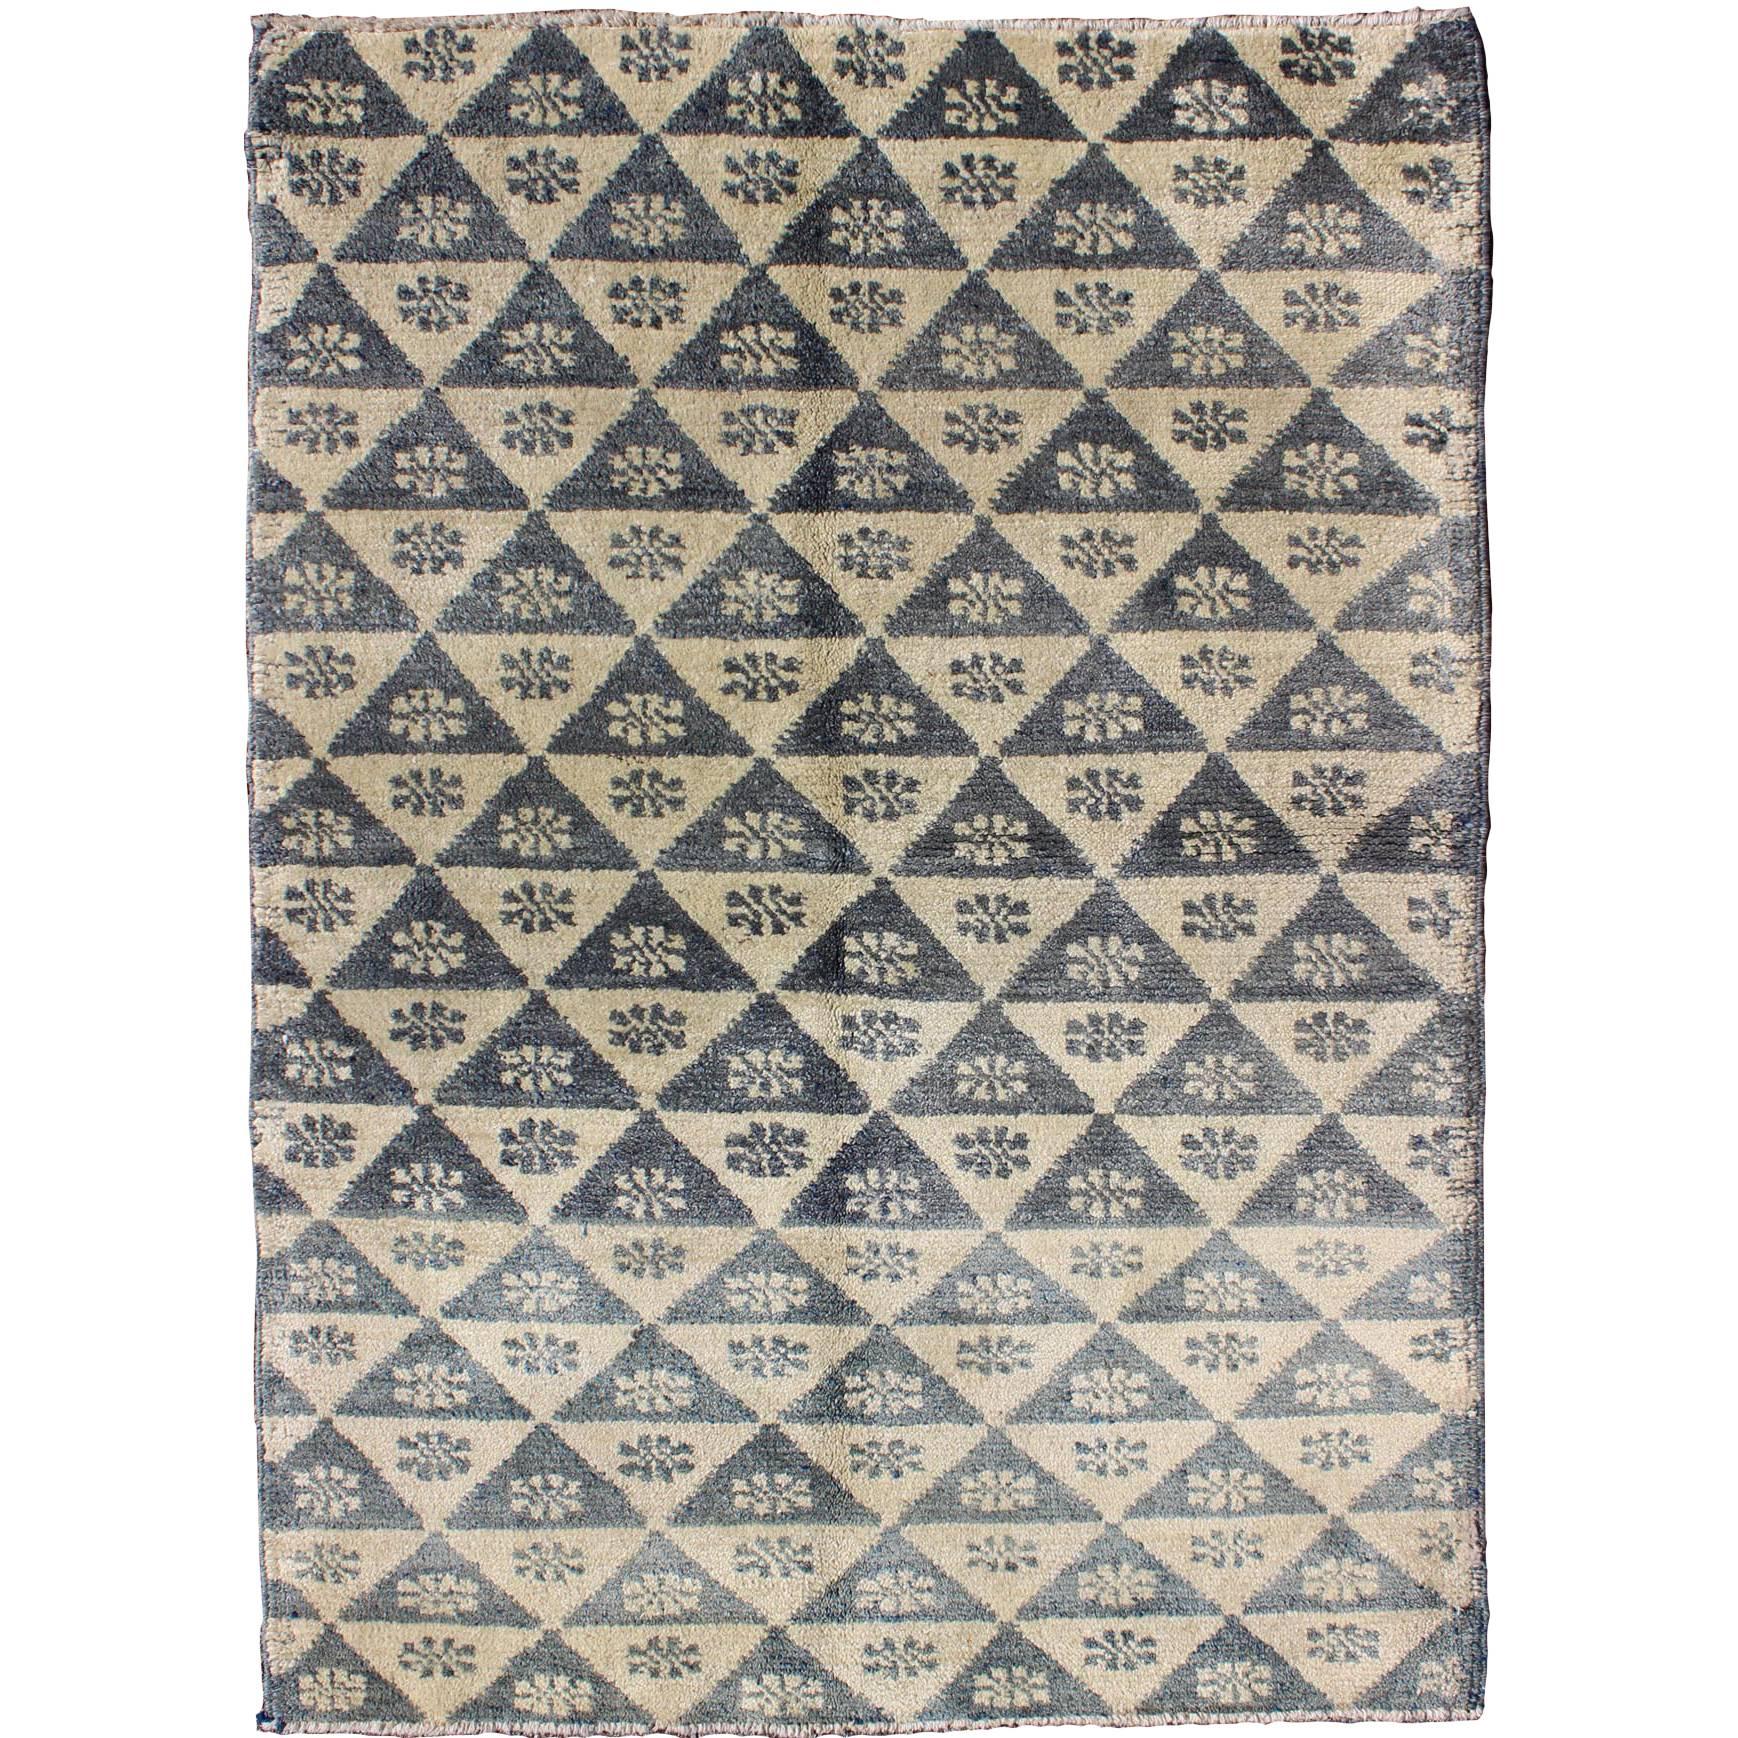 Türkischer Tulu-Teppich mit blauem und elfenbeinfarbenem Dreiecks-/Blumendesign